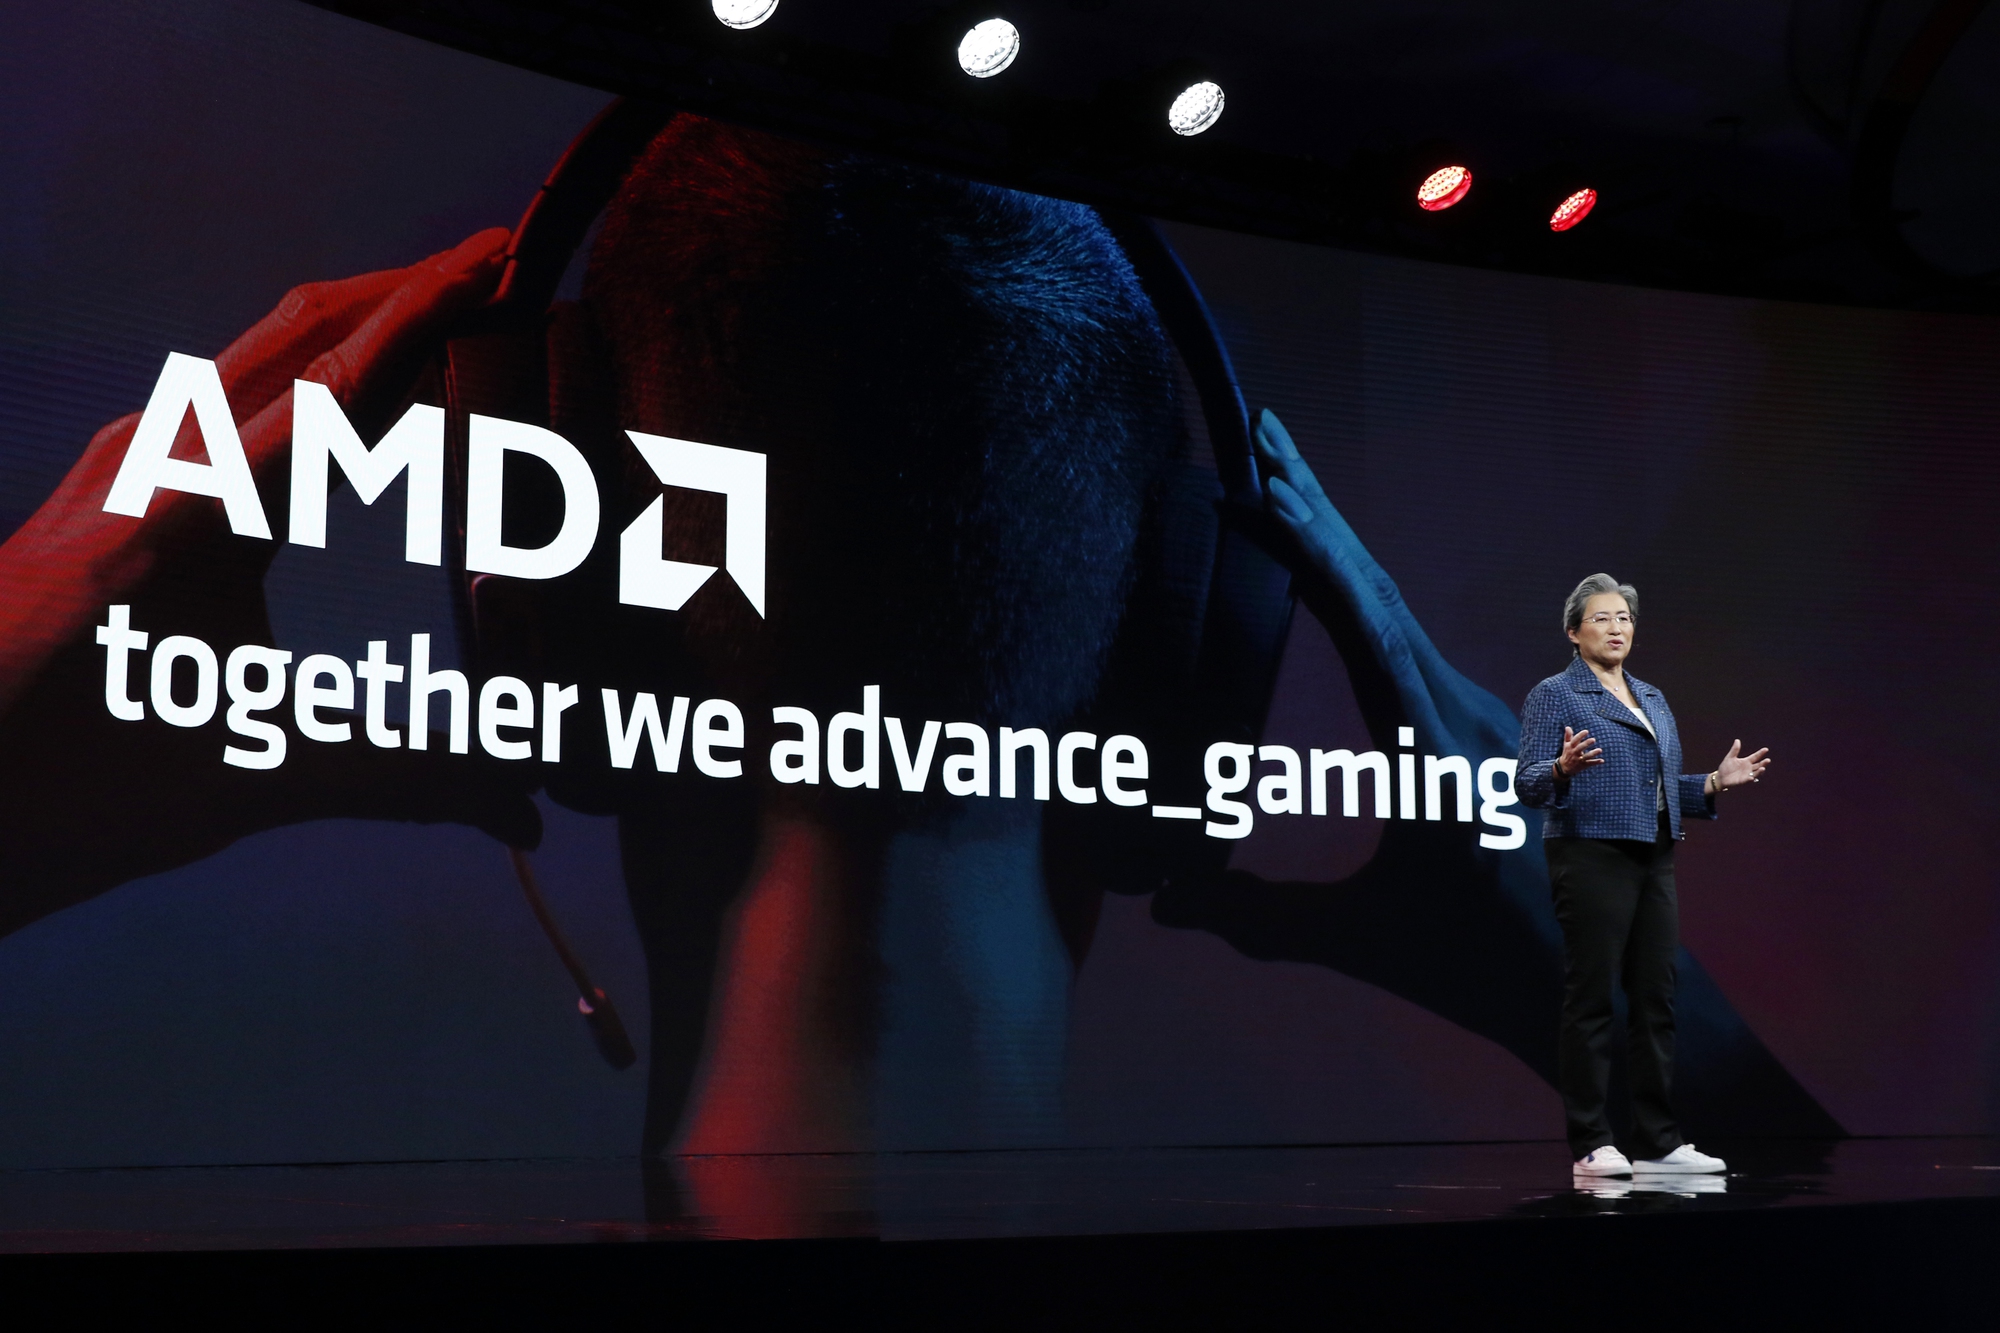 AMD chính thức ra mắt 2 card đồ họa thế hệ mới, sẵn sàng đối đầu đội xanh với mức giá rẻ hơn nhiều - Ảnh 1.